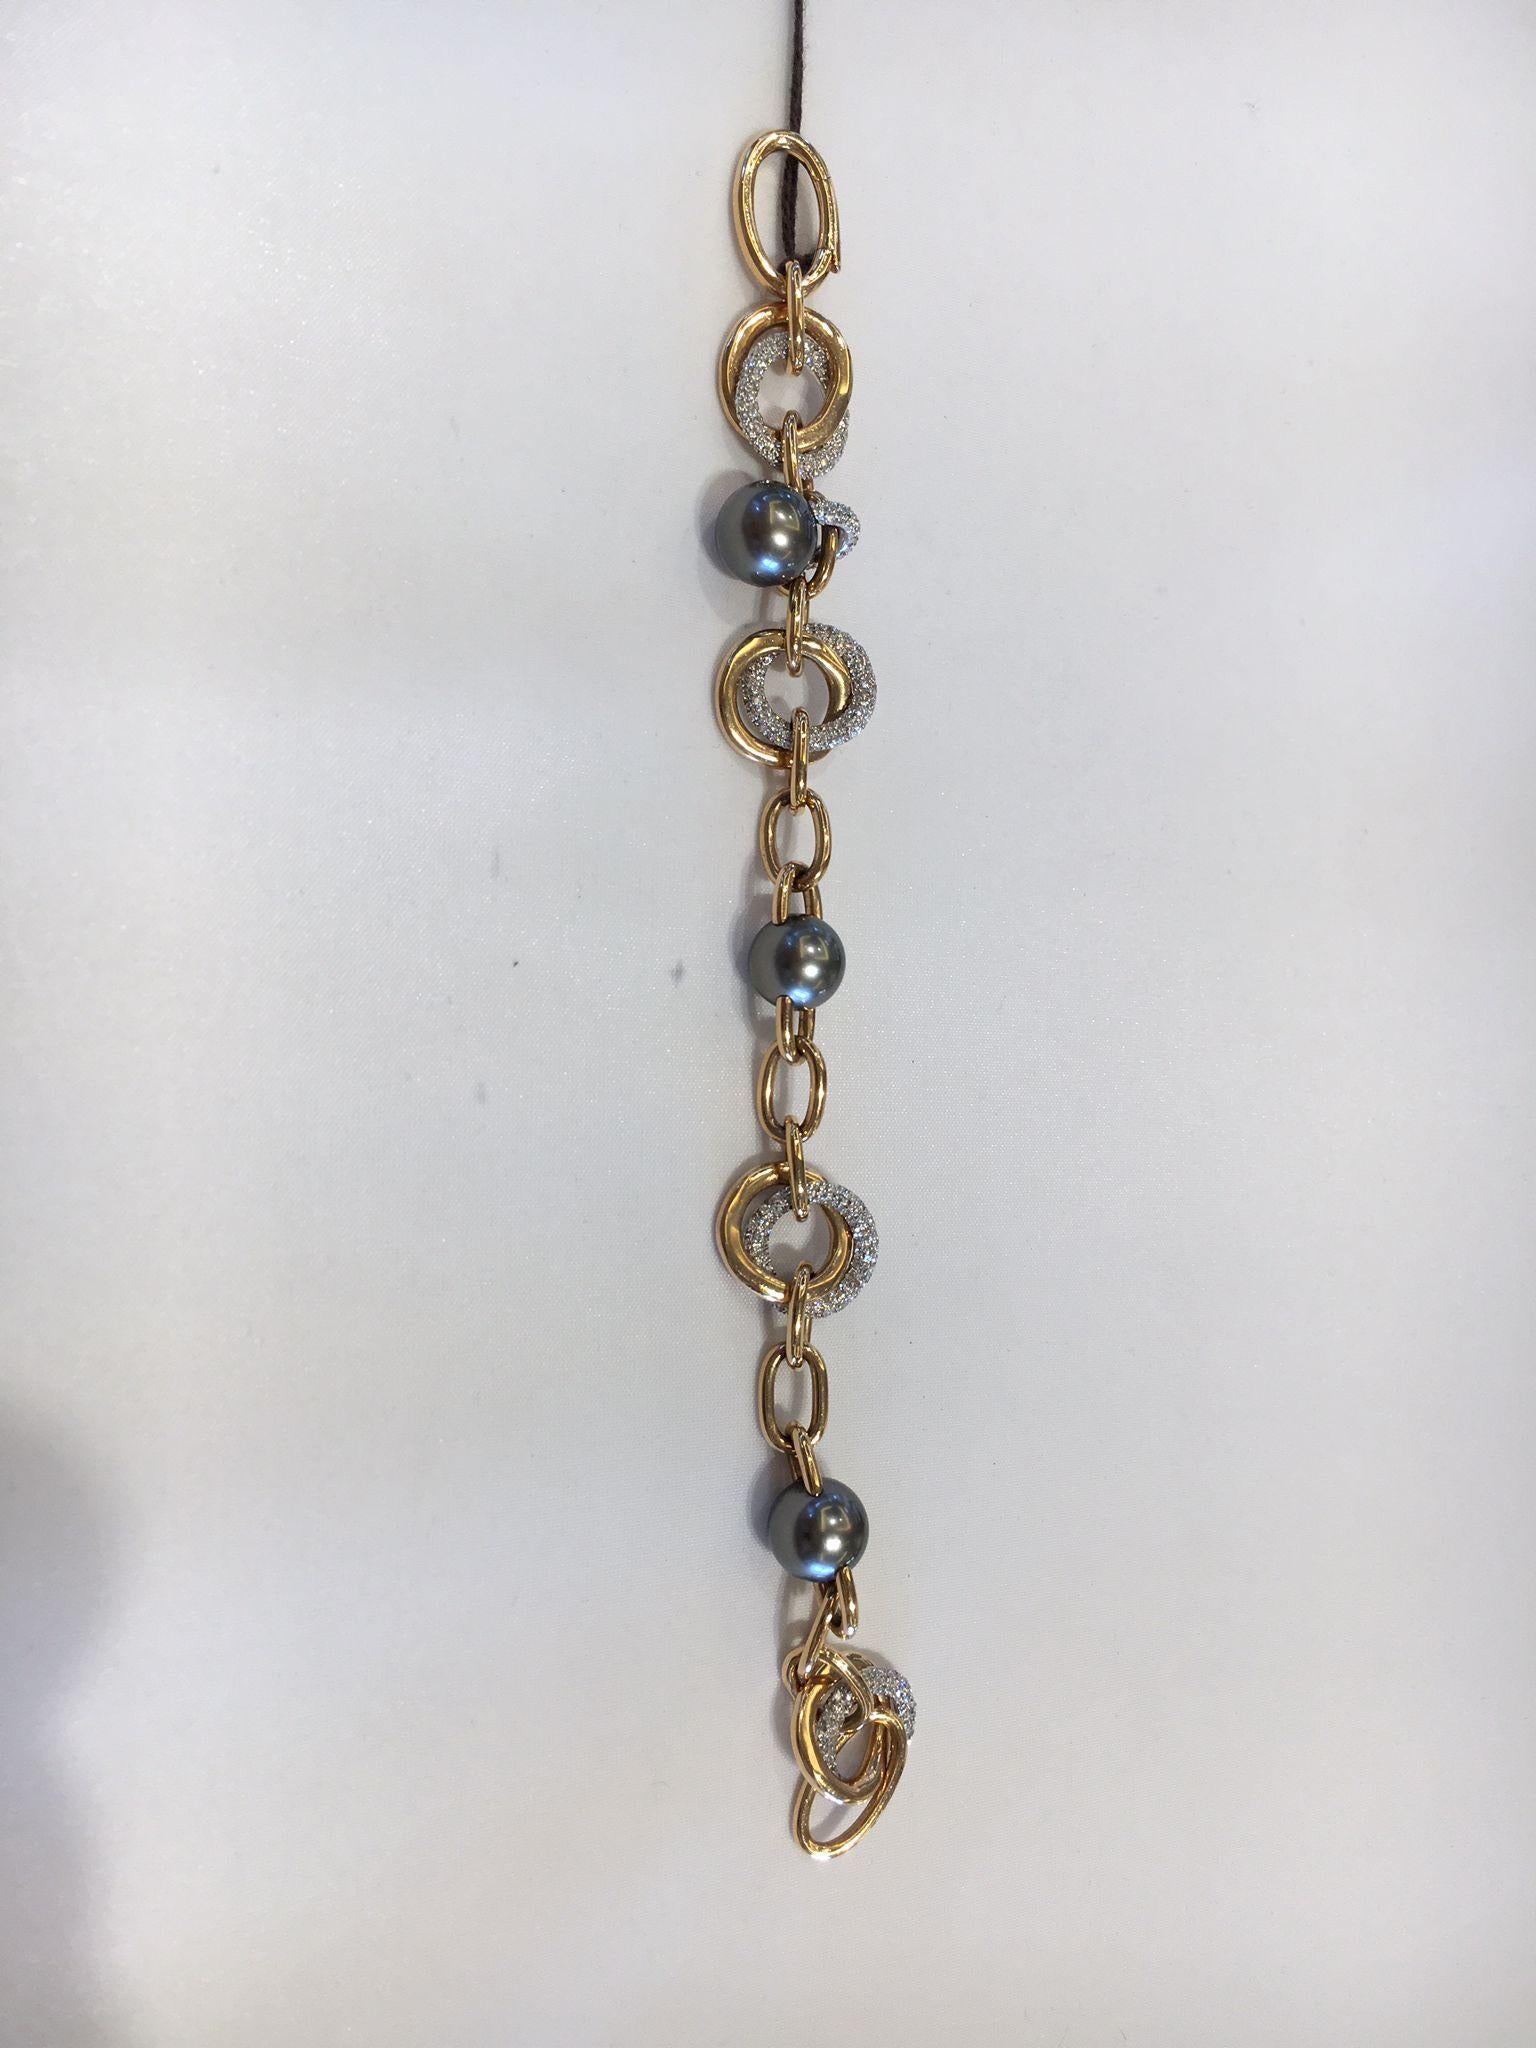 5A+ Bracelet de perles thaïlandaises en or blanc et rose de 18kt avec diamants par Mikimoto.
bracelet magnifique et intemporel fabriqué par Mikimoto dans notre stock depuis 2008.
Le bracelet est fabriqué avec des perles noires de Thaiti, et il est